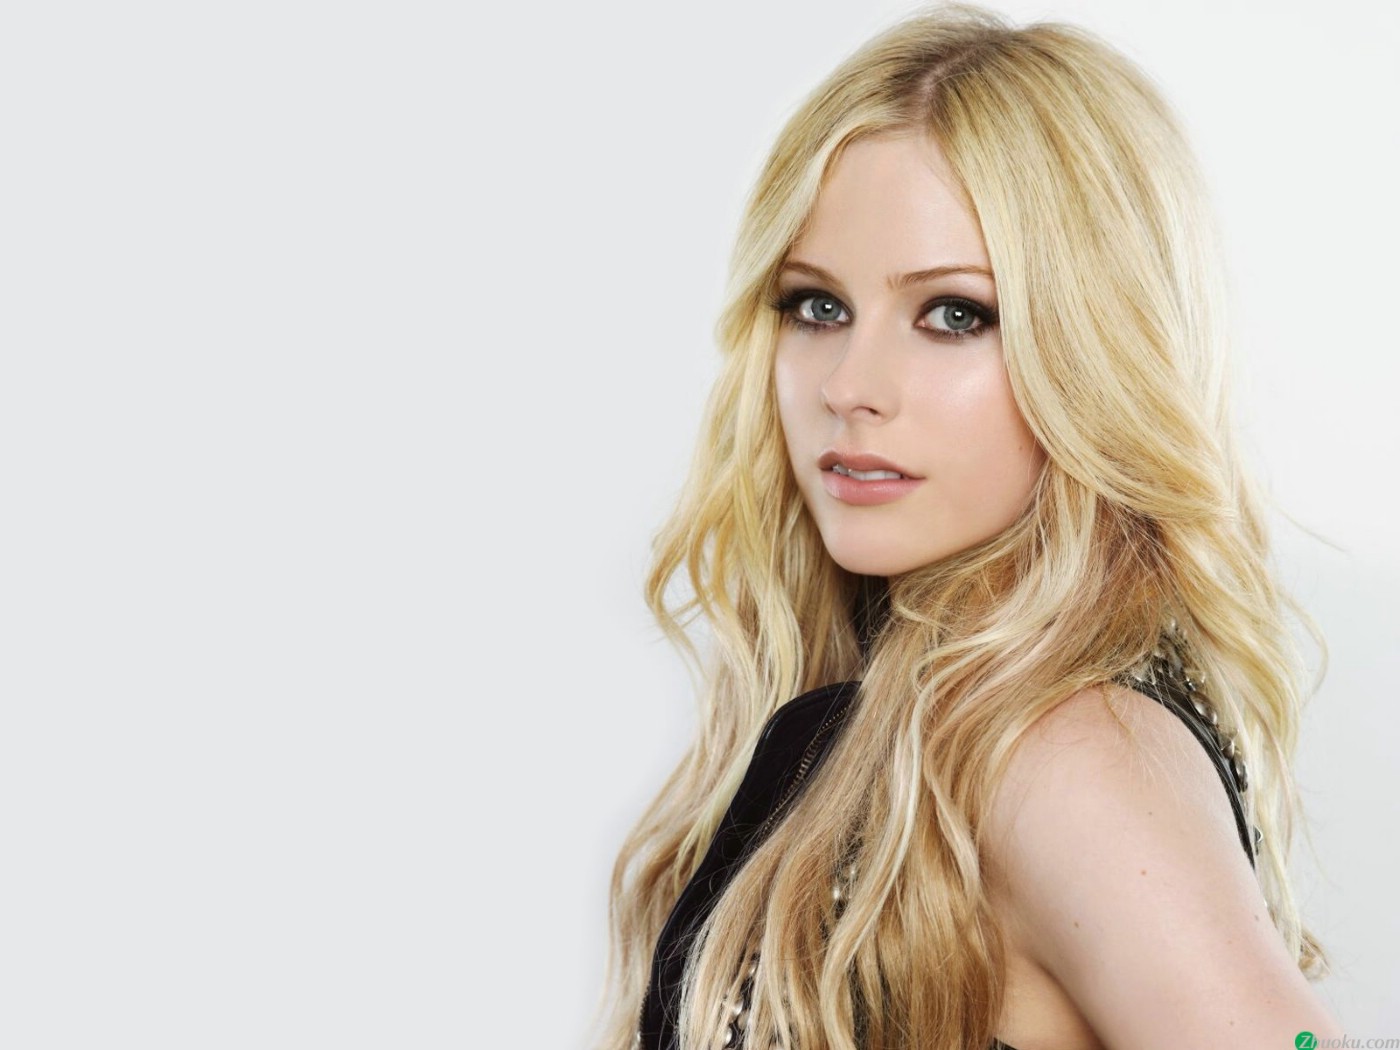 壁纸1400x1050艾薇儿 Avril Lavigne 壁纸1壁纸 艾薇儿 Avril Lavigne壁纸 艾薇儿 Avril Lavigne图片 艾薇儿 Avril Lavigne素材 明星壁纸 明星图库 明星图片素材桌面壁纸